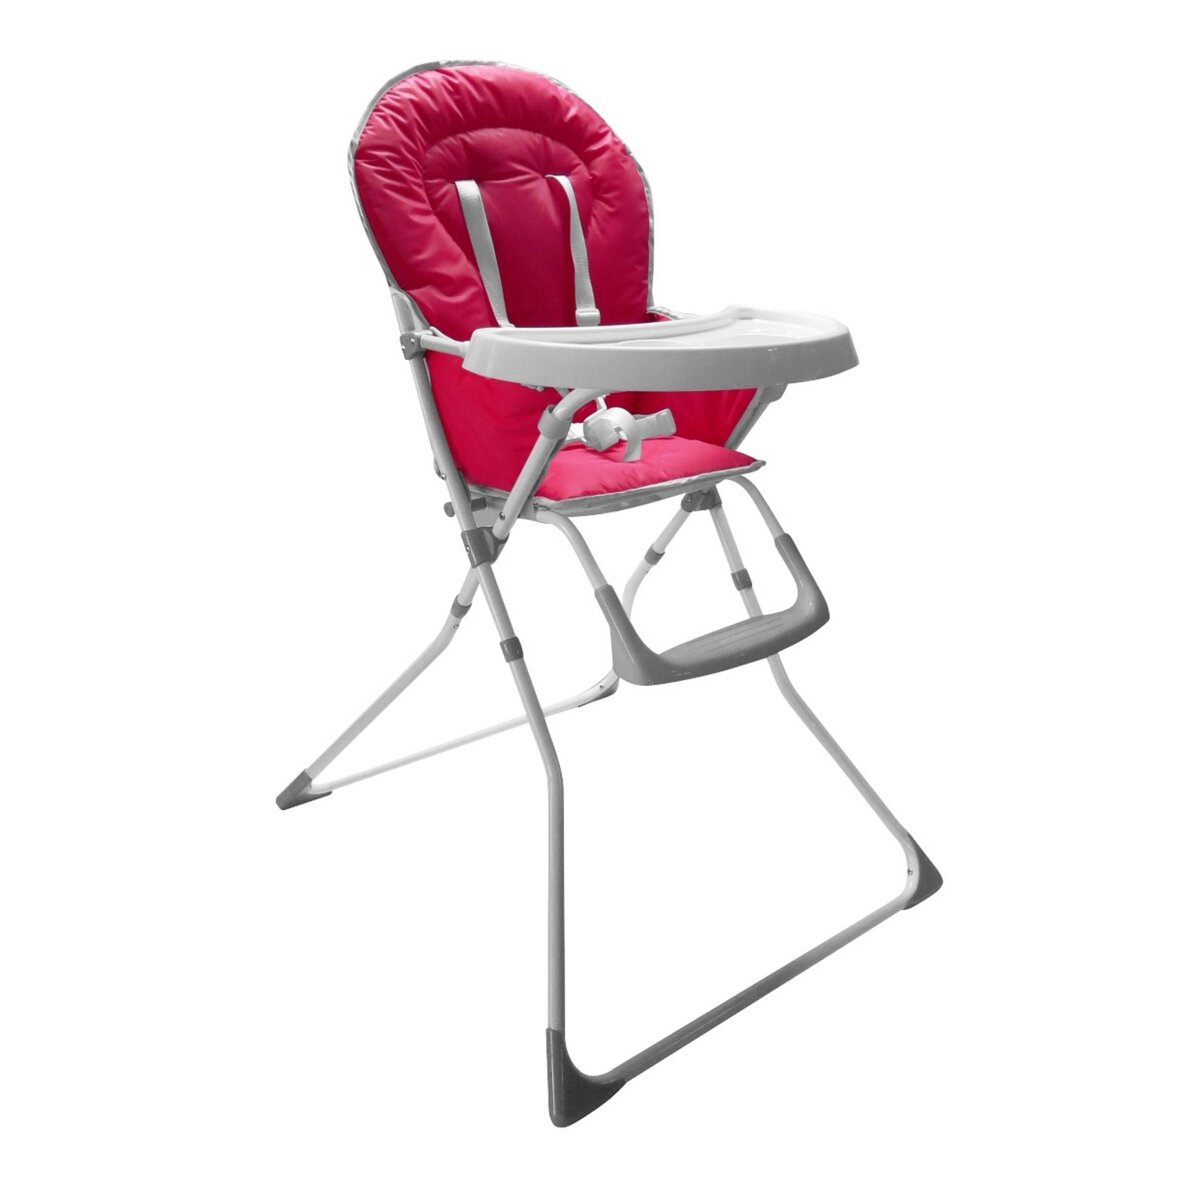 COMPTINE Chaise haute pliante bébé framboise/gris